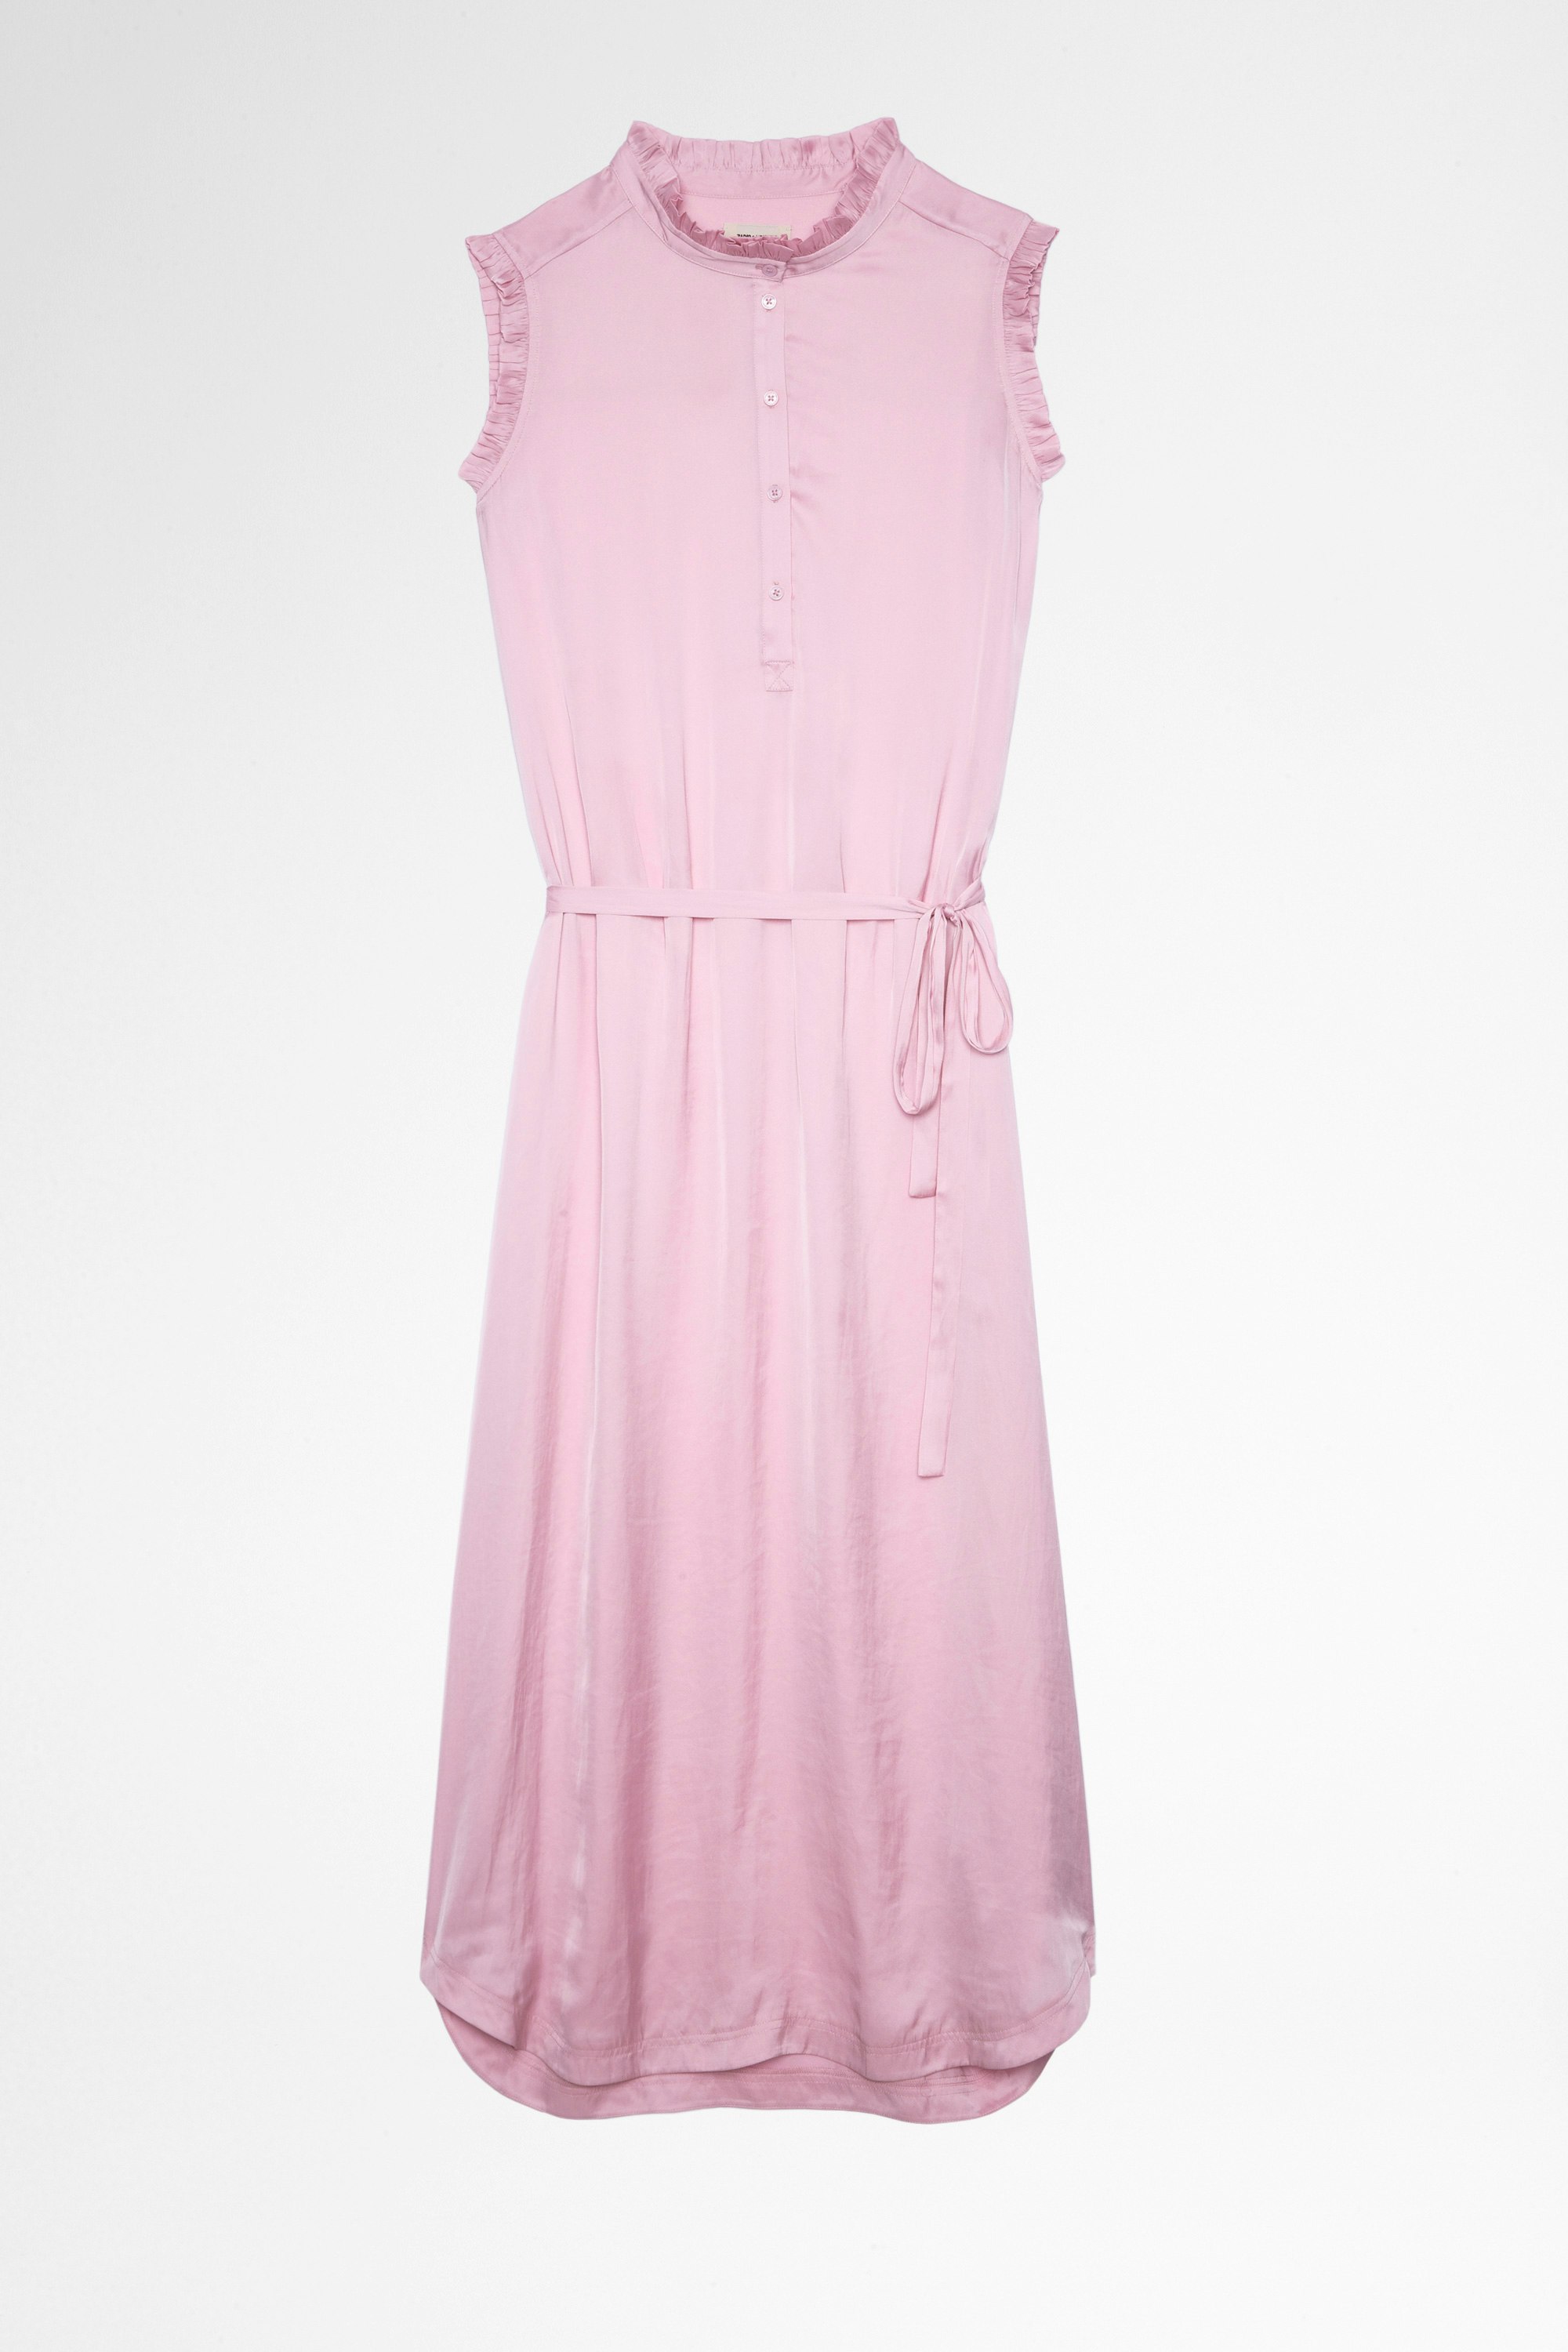 Raos Satin Dress Women's pink satin dress 